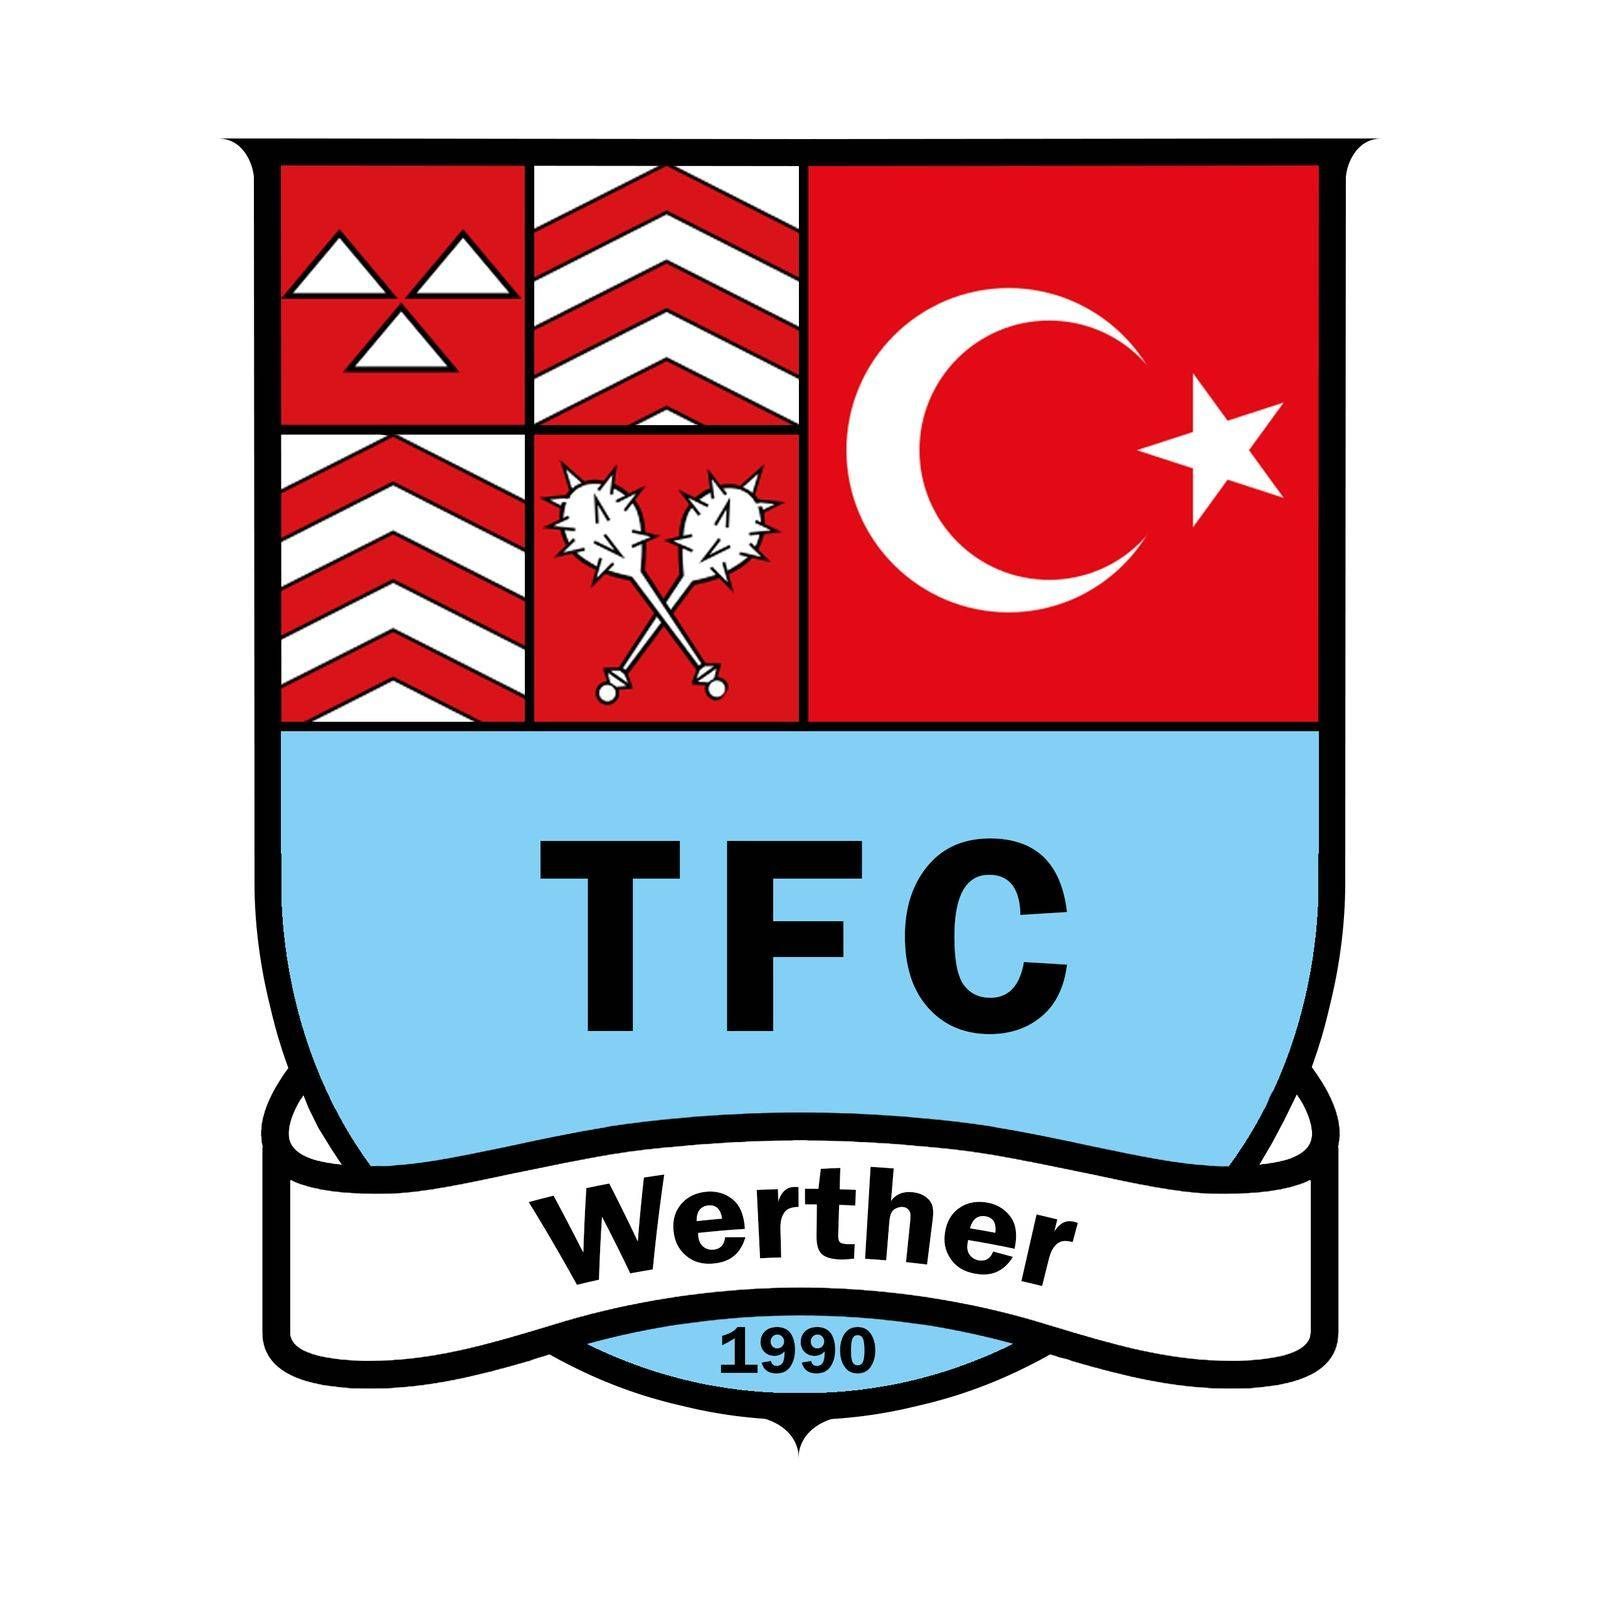 TFC Werther